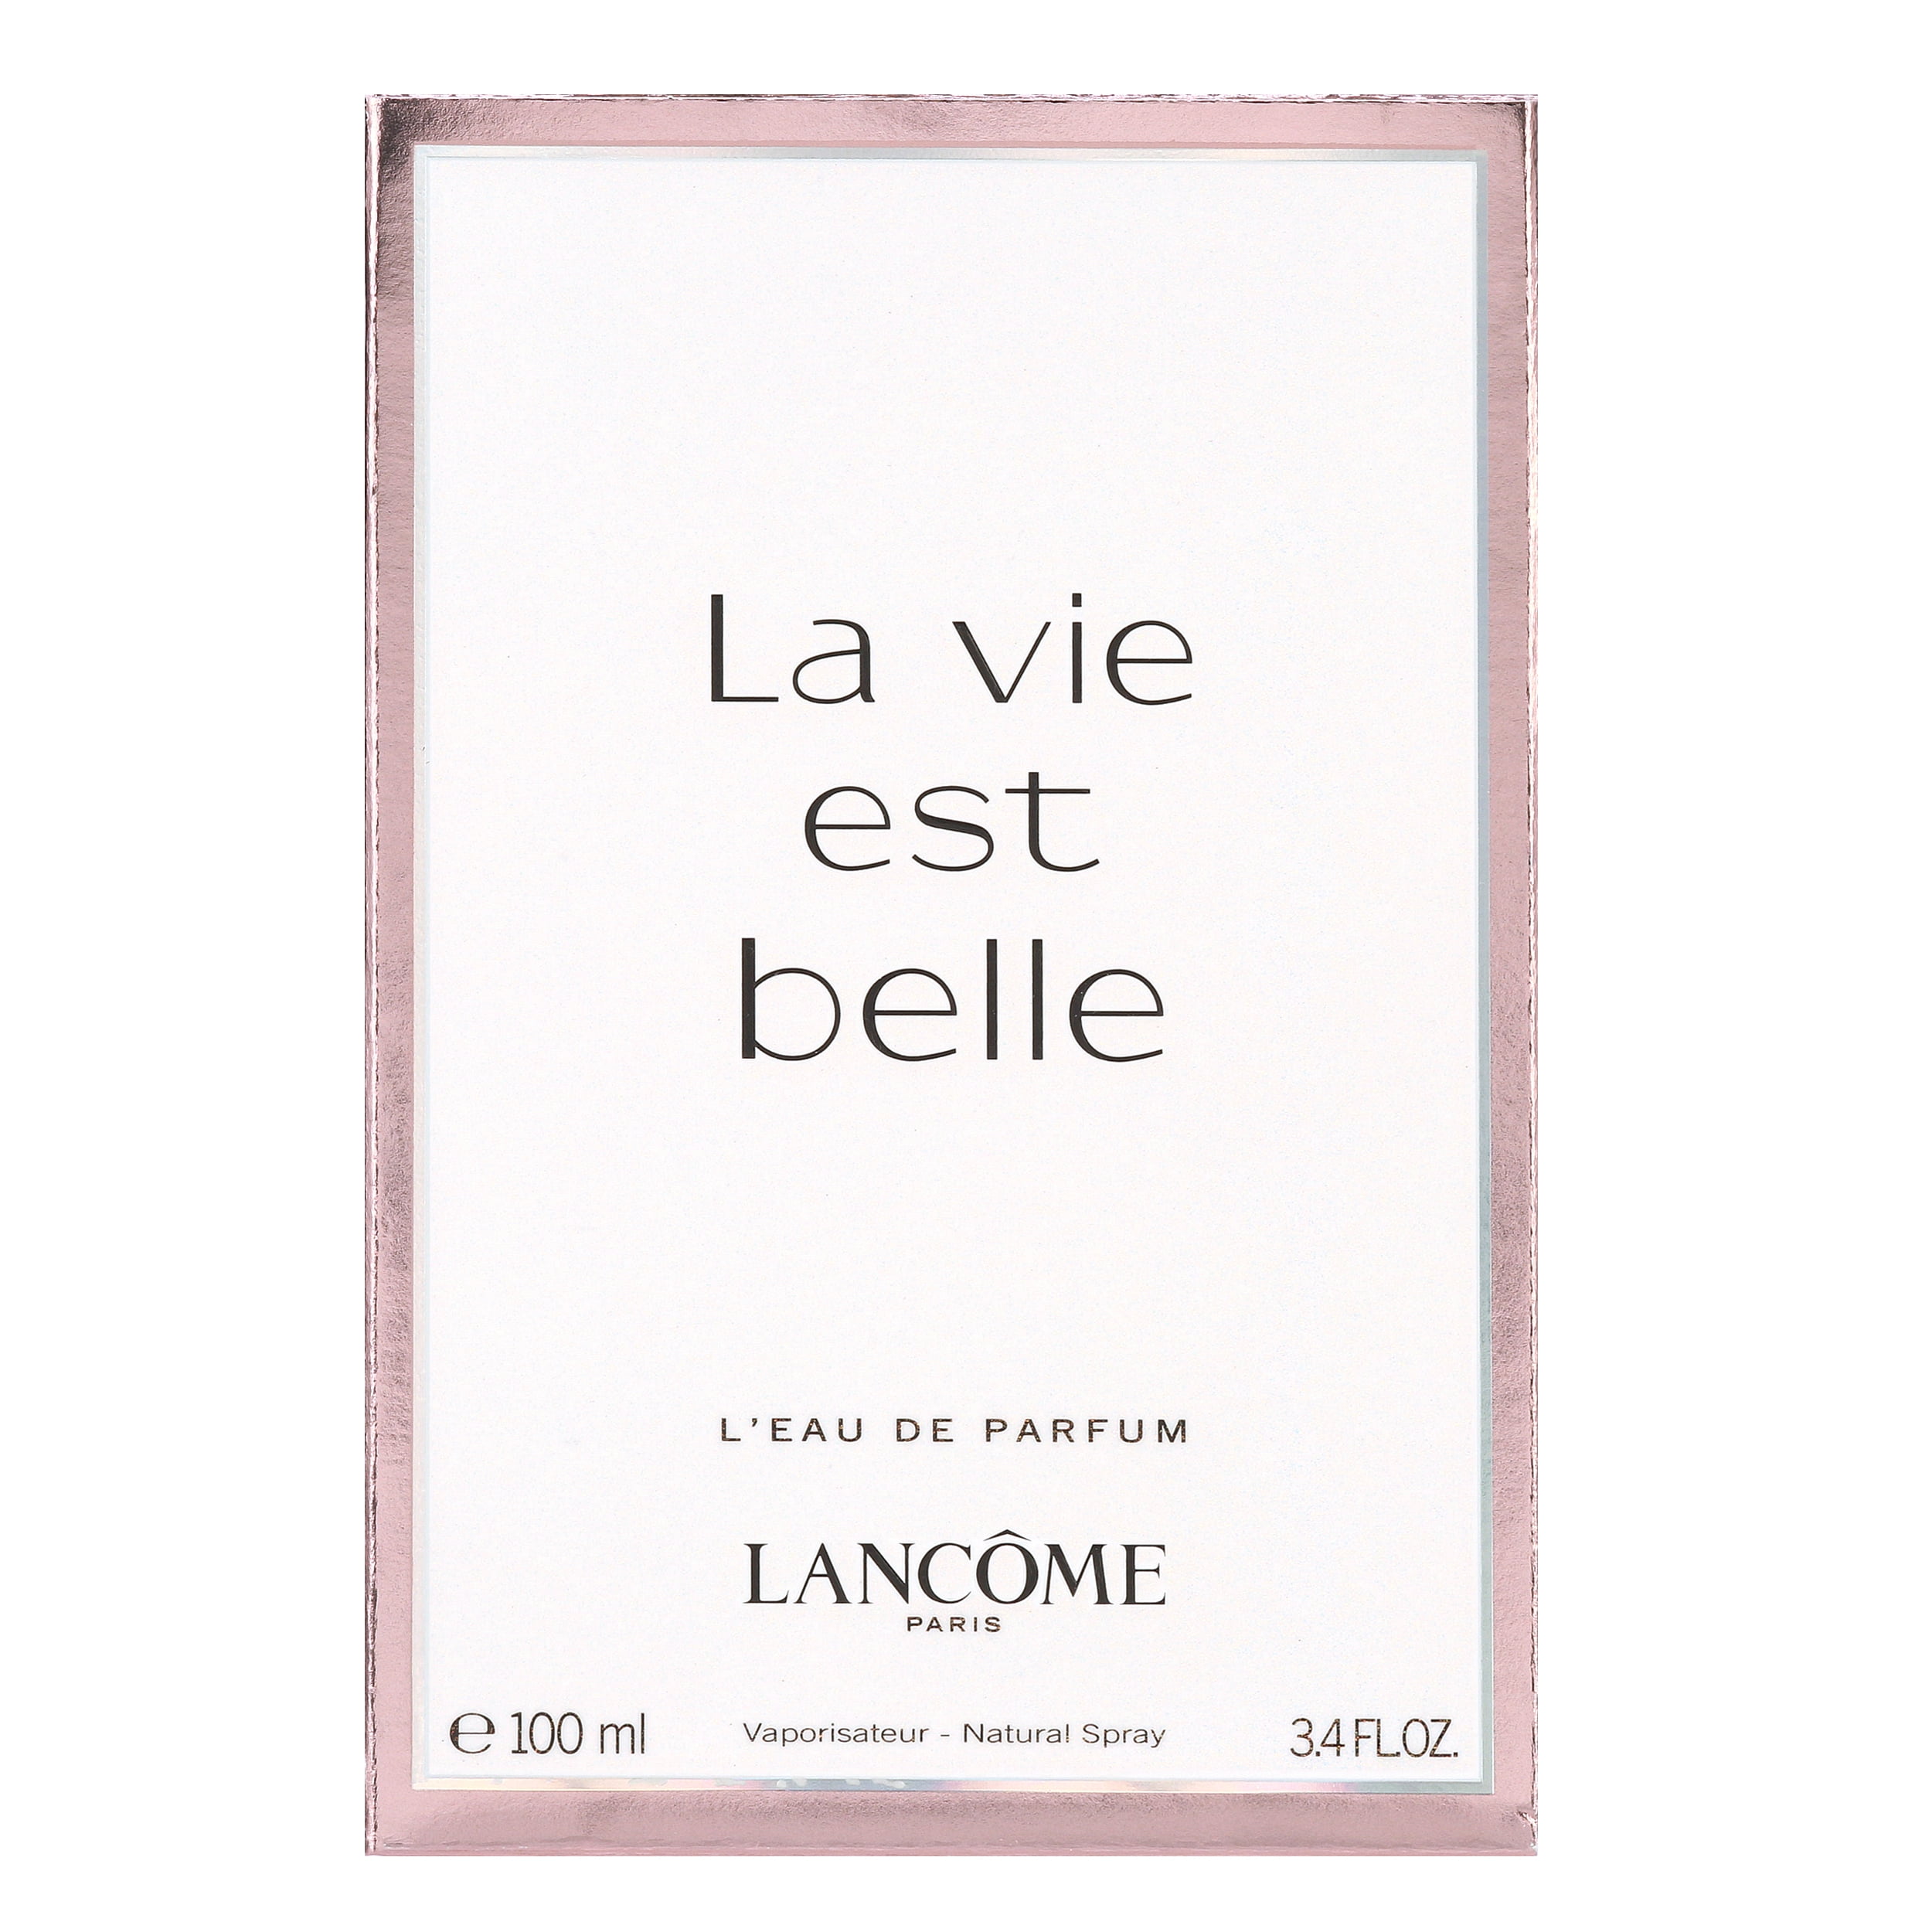 LANCOME Lancôme La Vie Est Belle L'Eau de Parfum Spray, 3.4 India